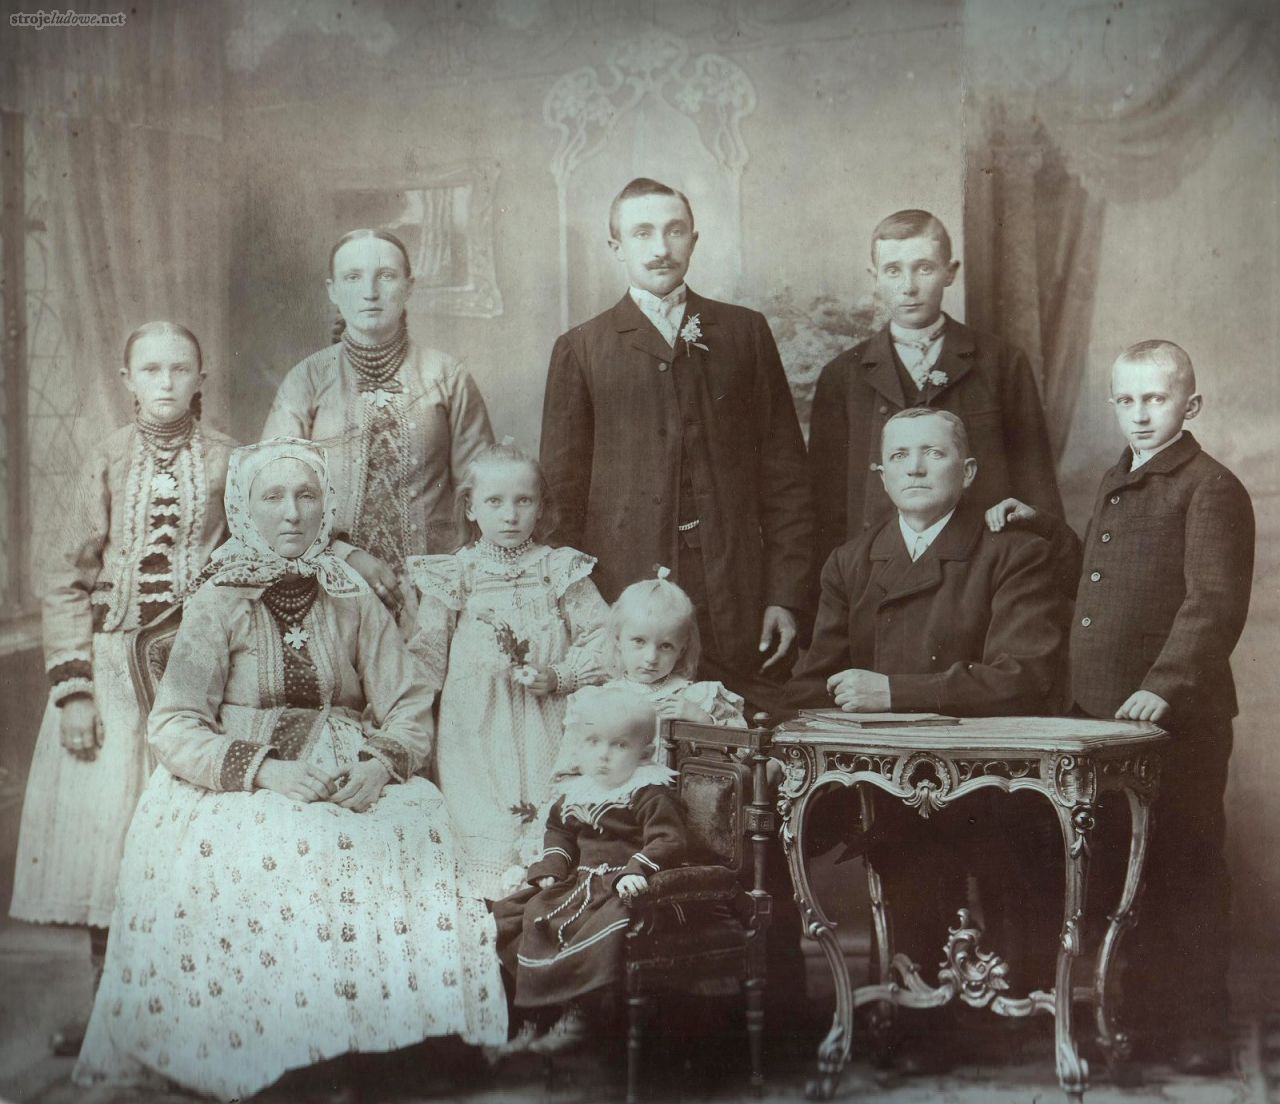 Rodzina Nowaków (Biba), około 1905 r., ze zbiorów prywatnych

O ile stroje kobiet w I połowie XX wieku były niezwykle różnorodne, męskie nie miały odmian, poza obrzędowymi.
